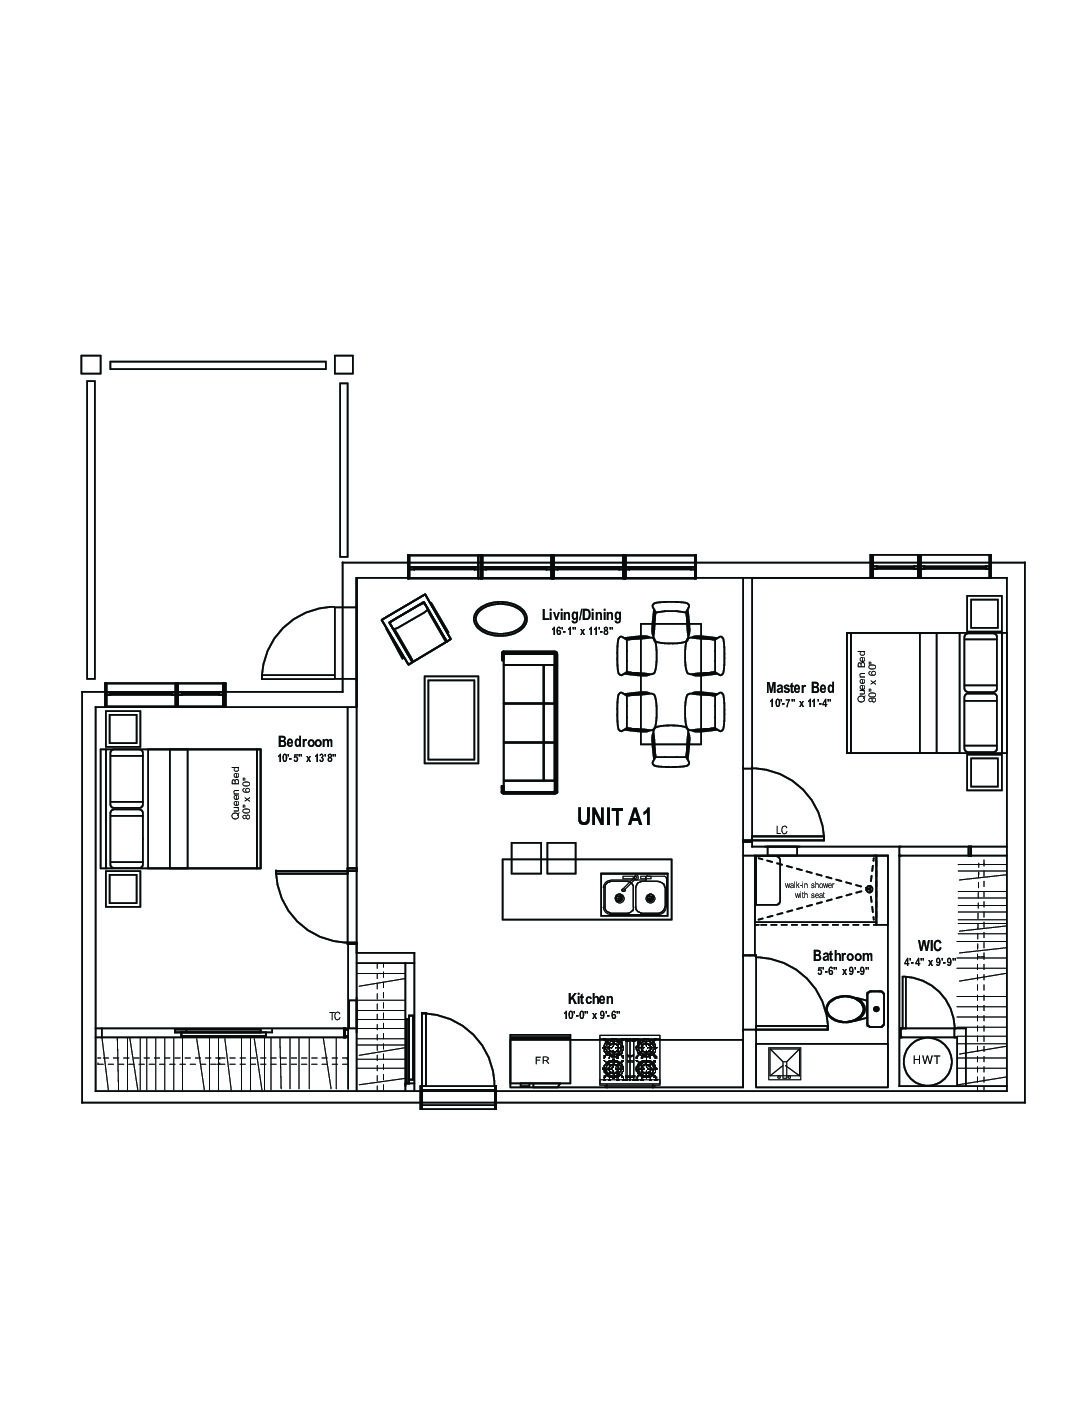 View or Print PDF of 1 Bedroom floor plan in new tab